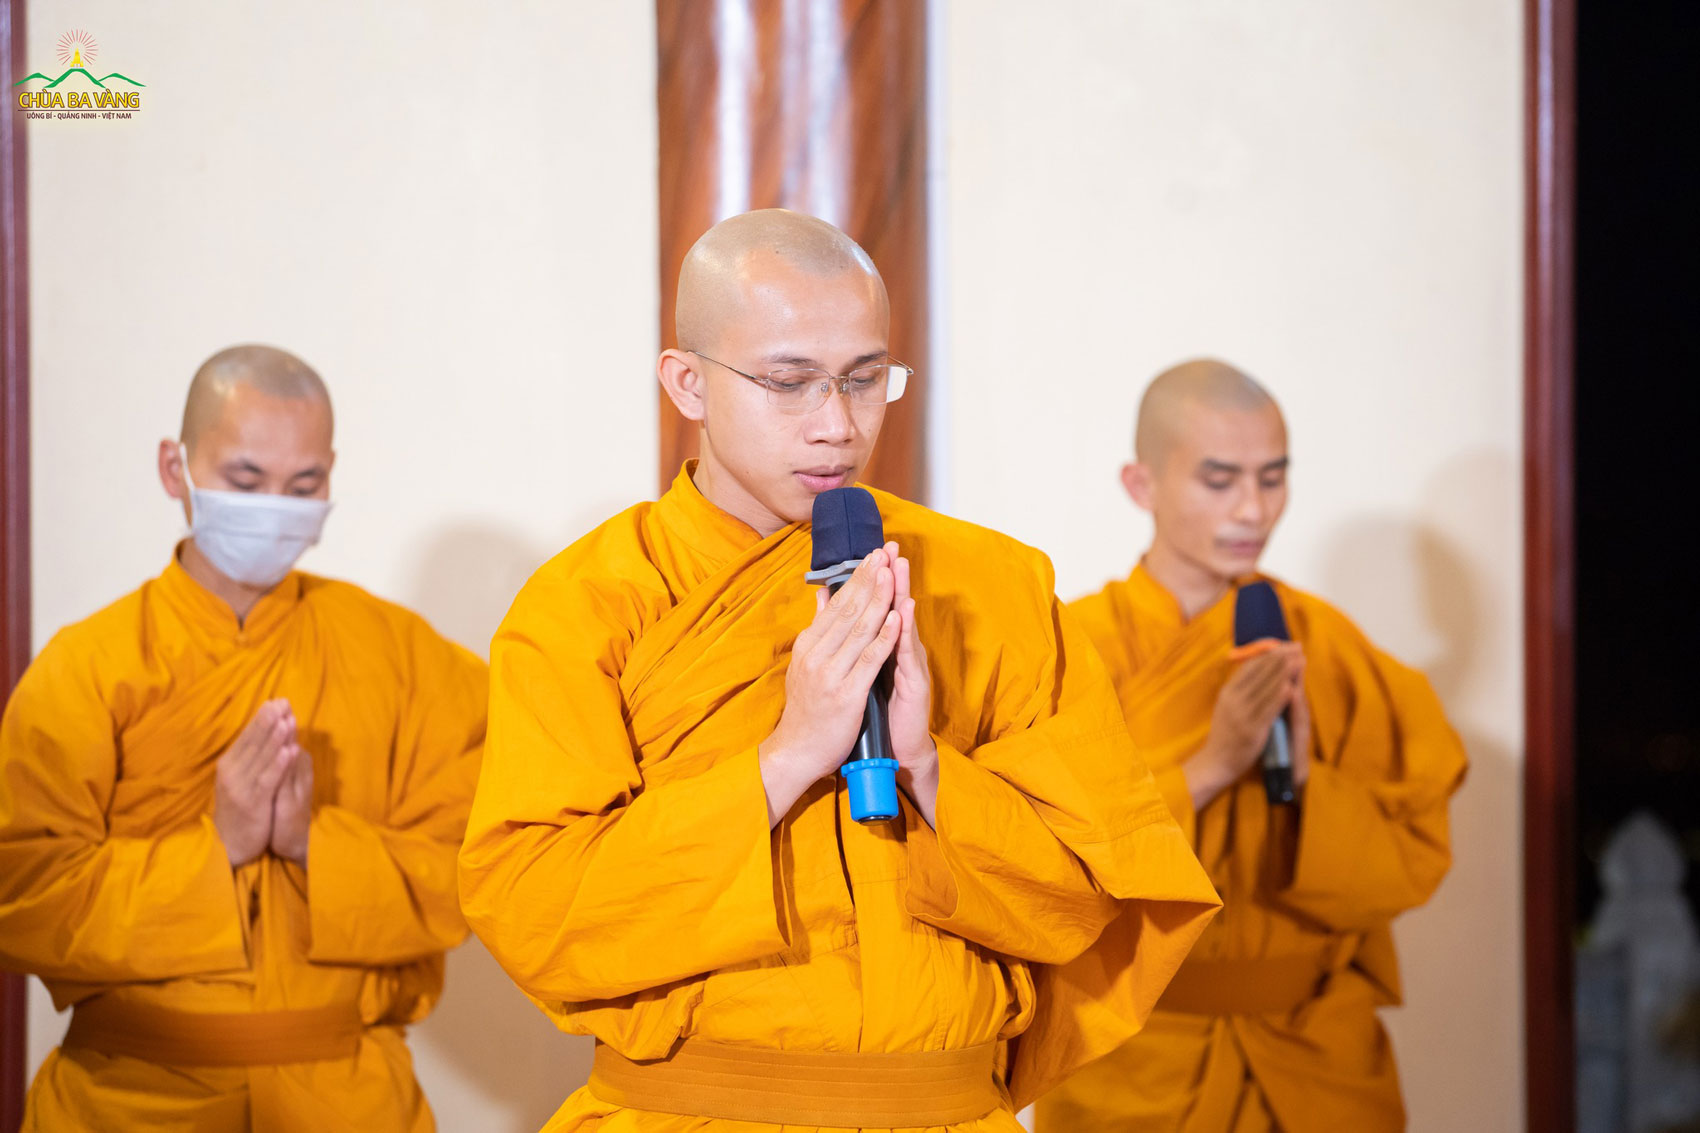 Chư Tăng chùa Ba Vàng trang nghiêm hướng về ban thờ Sơ Tổ Thiền phái Trúc Lâm - Phật hoàng Trần Nhân Tông